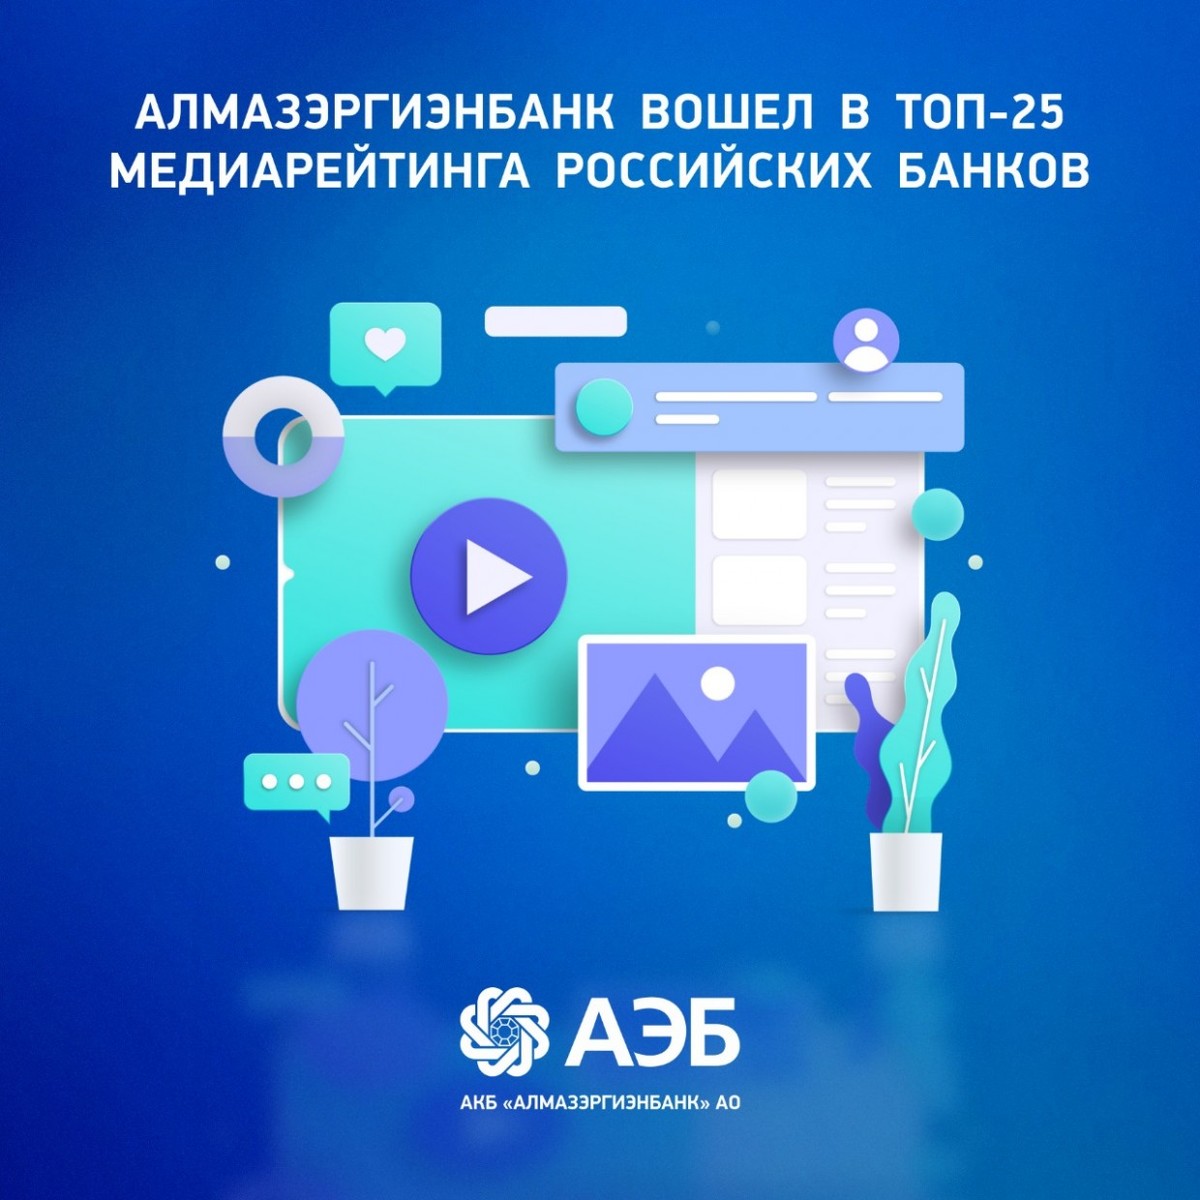 Алмазэргиэнбанк вошел в топ-25 медиарейтинга российских банков